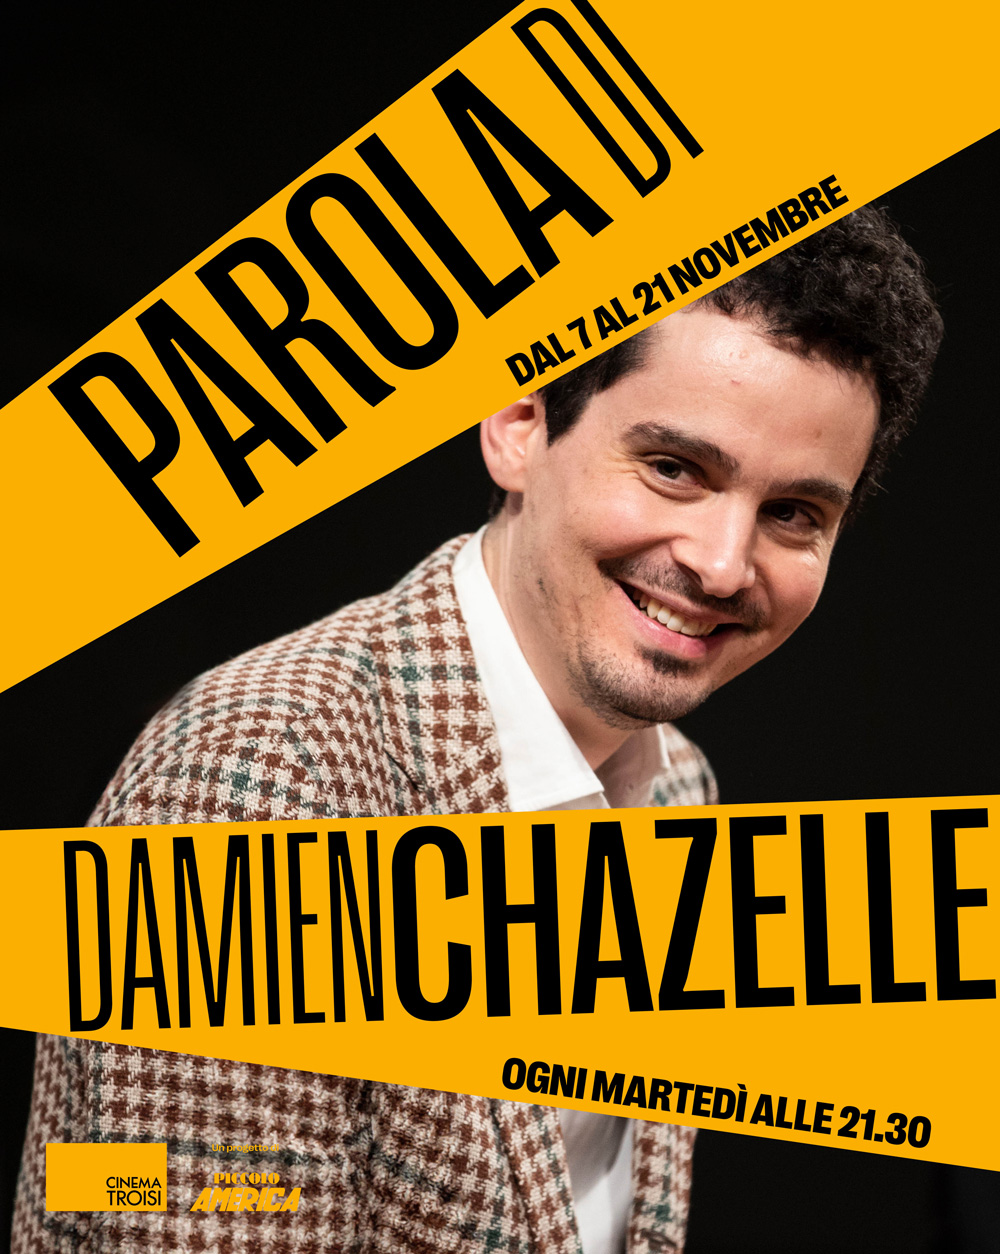 Parola di Damien Chazelle: carta bianca all’autore per tre incontri al Cinema Troisi!